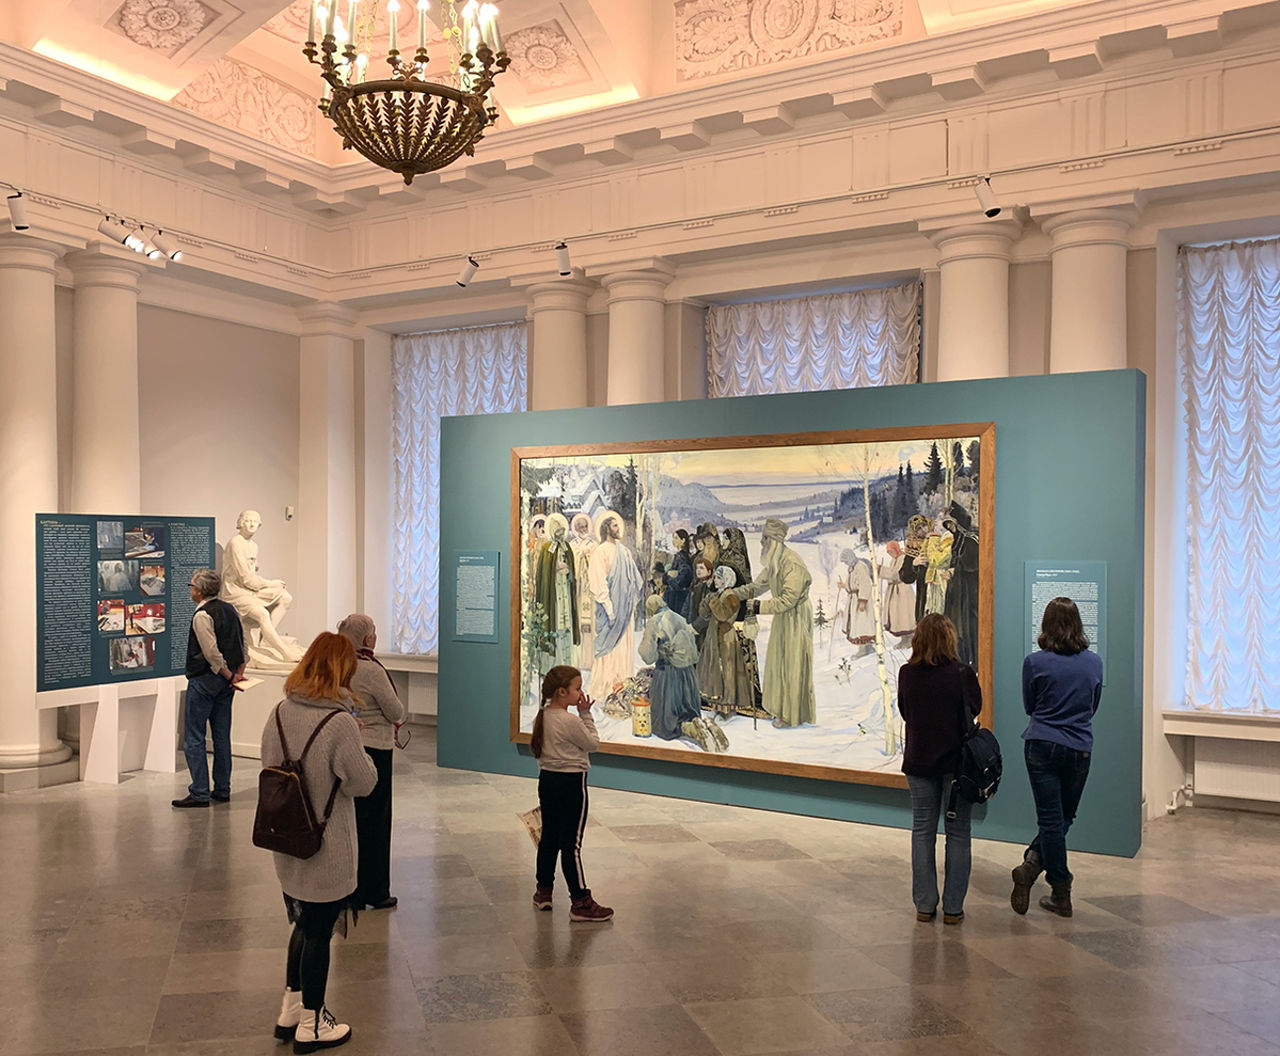 Выставка природа в русском музеи